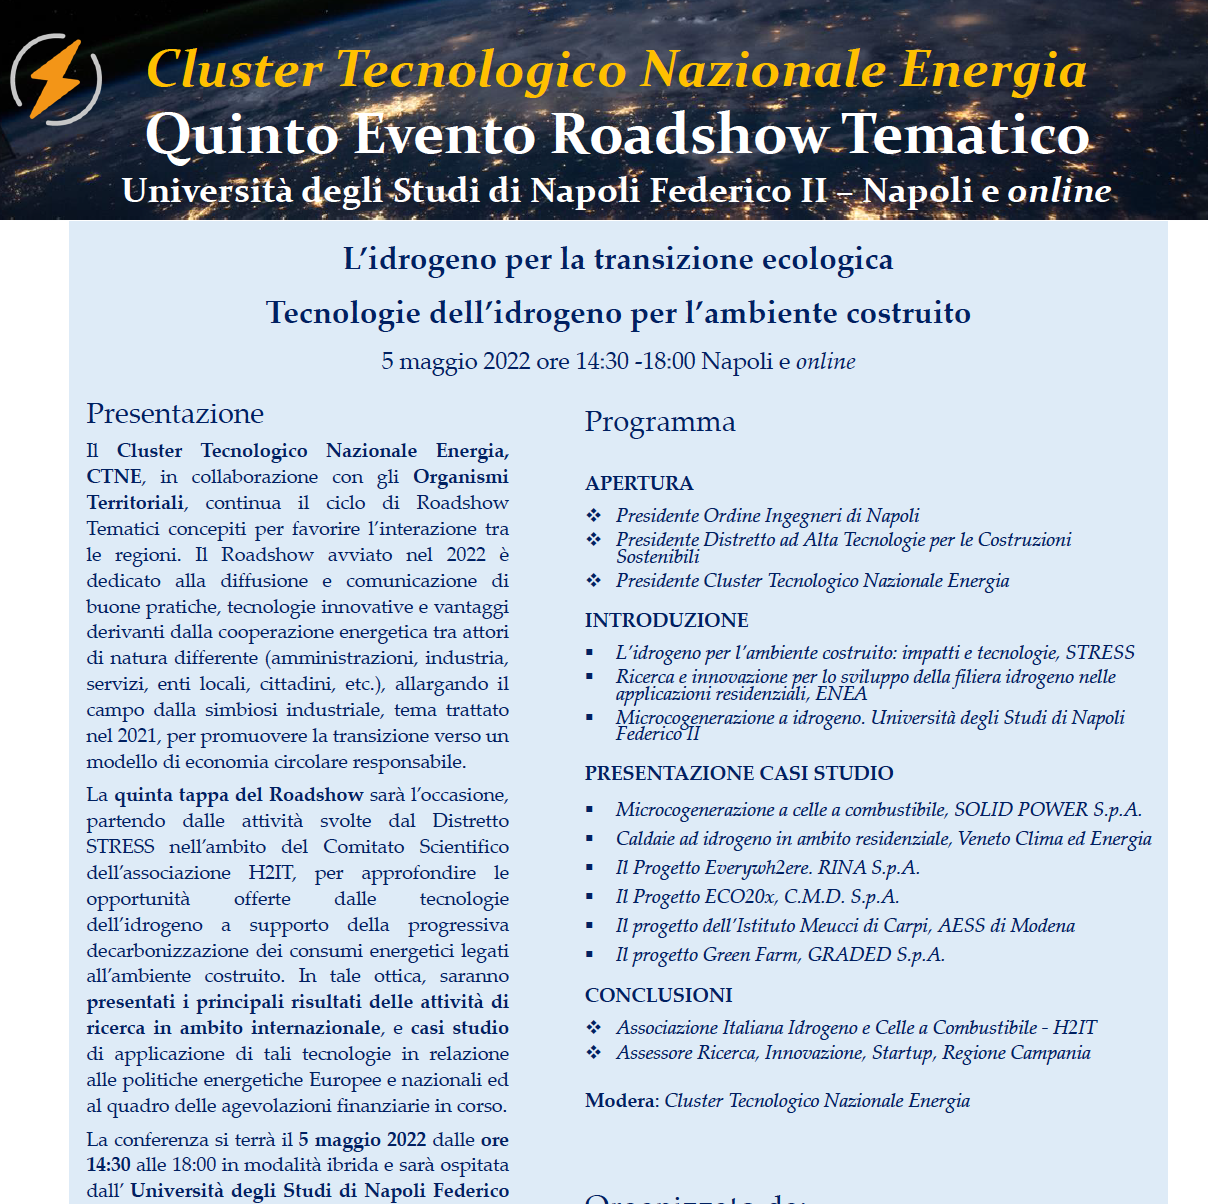 Roadshow CTNE – Tecnologie dell’idrogeno per l’ambiente costruito – 5 maggio 2022 Napoli e online